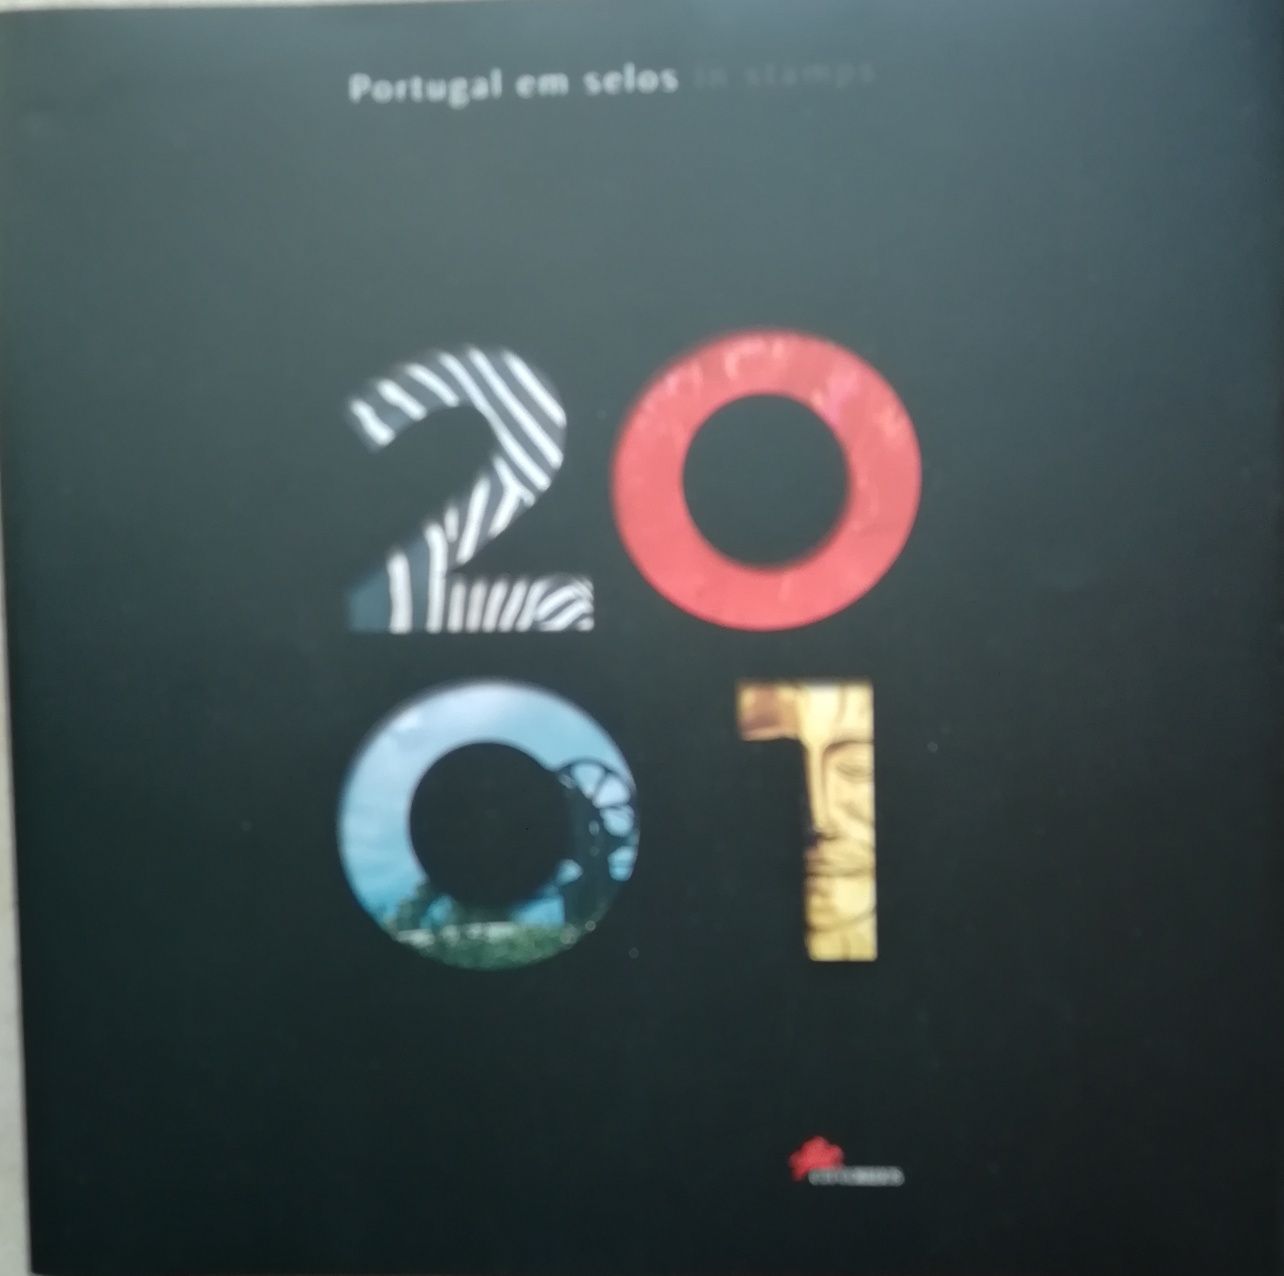 Livros Portugal em selos CTT